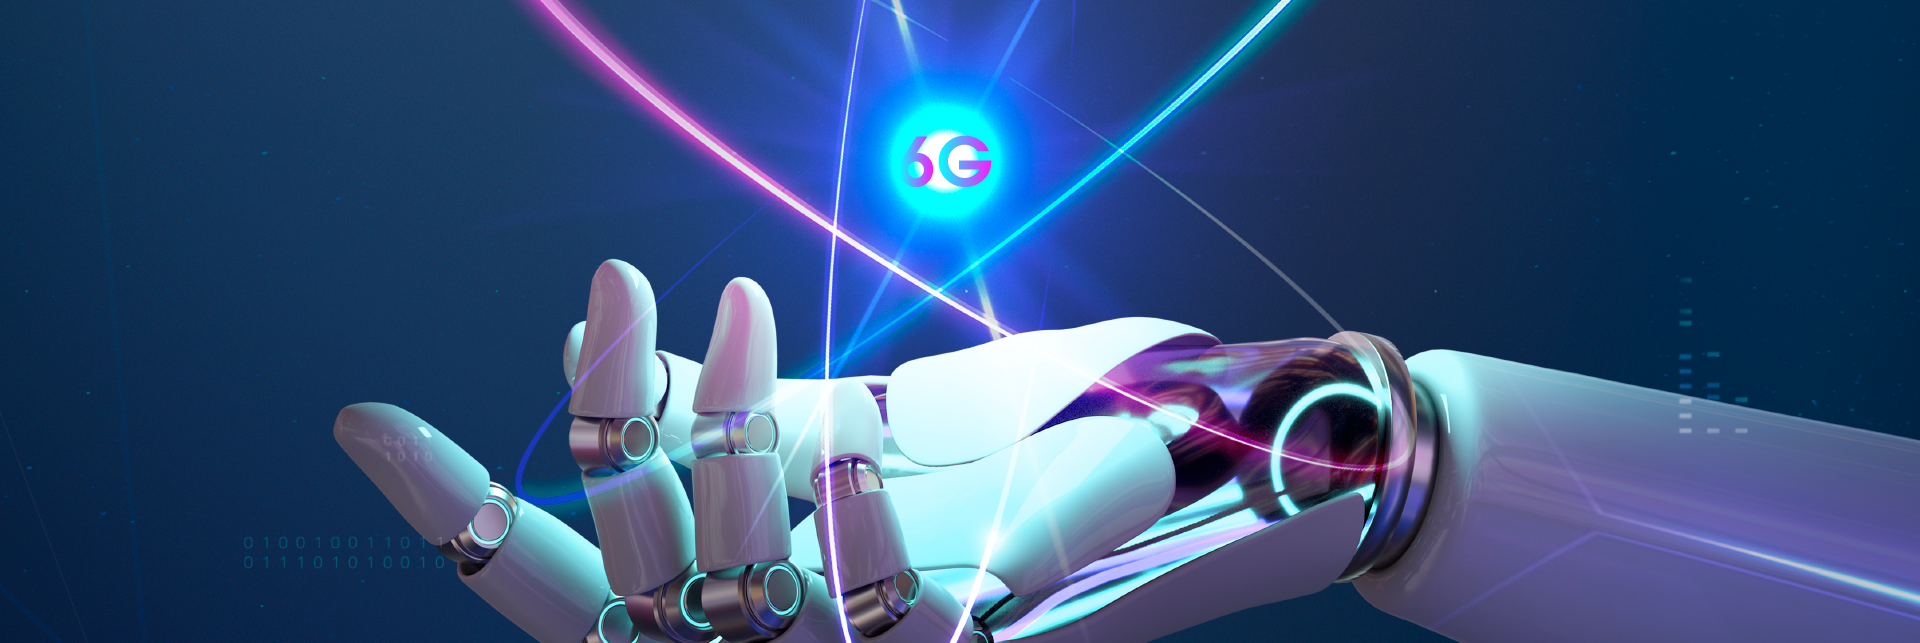 alt="robot hand showing 6G technology"